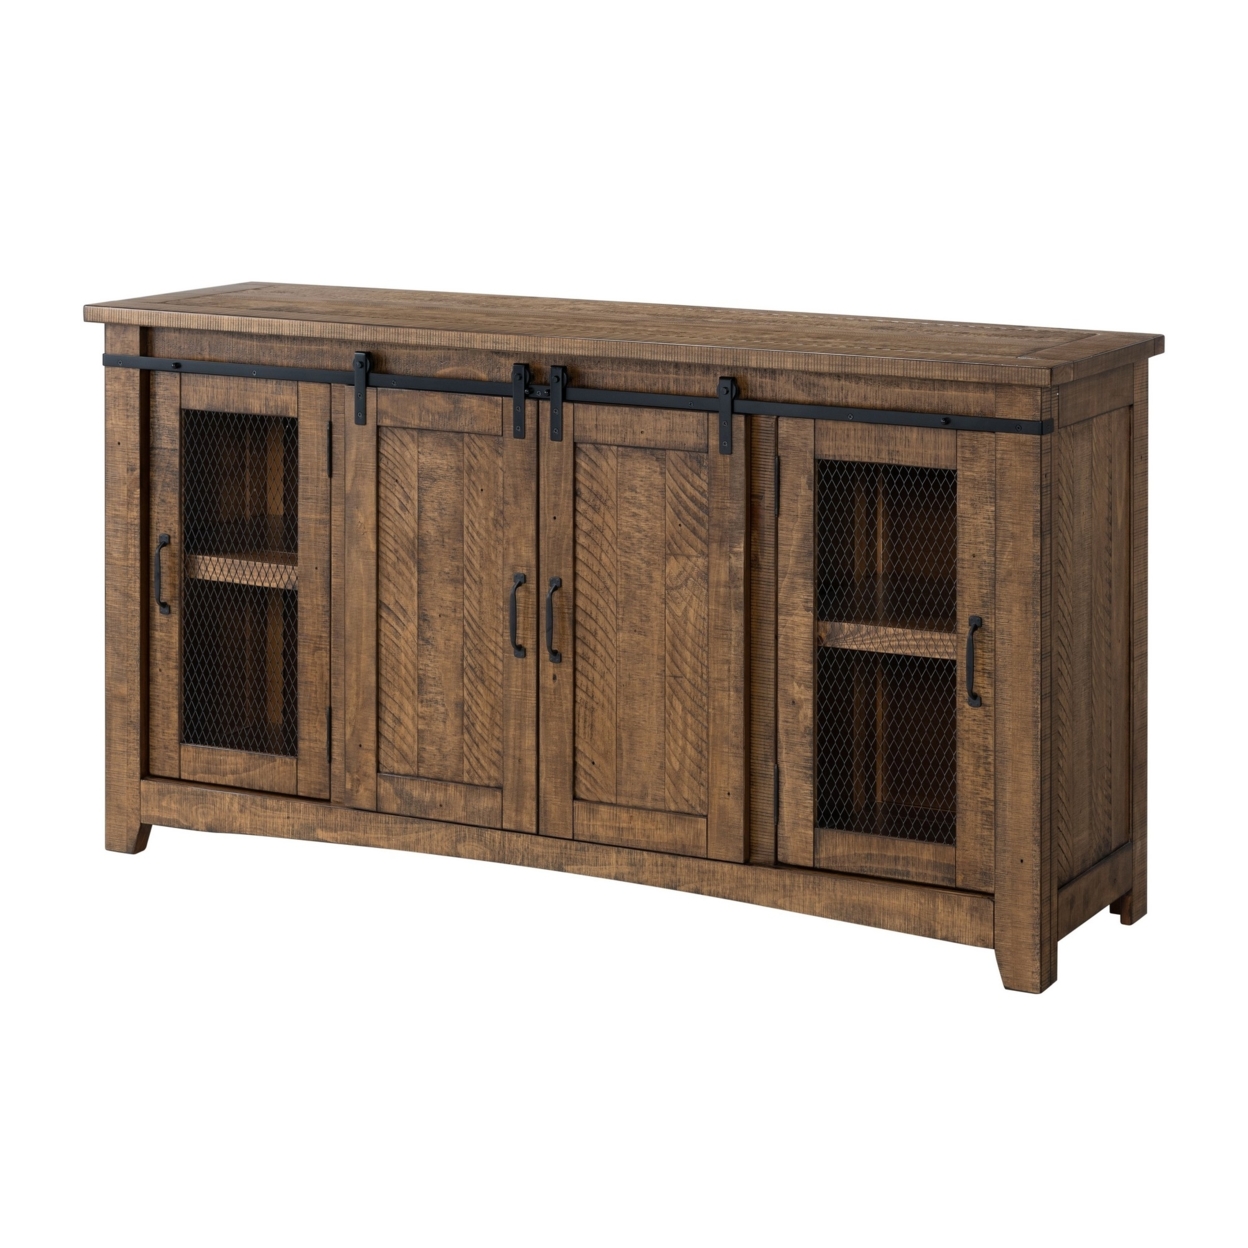 65 Inch Rustic Wooden TV Stand With 2 Door Cabinet, Brown- Saltoro Sherpi